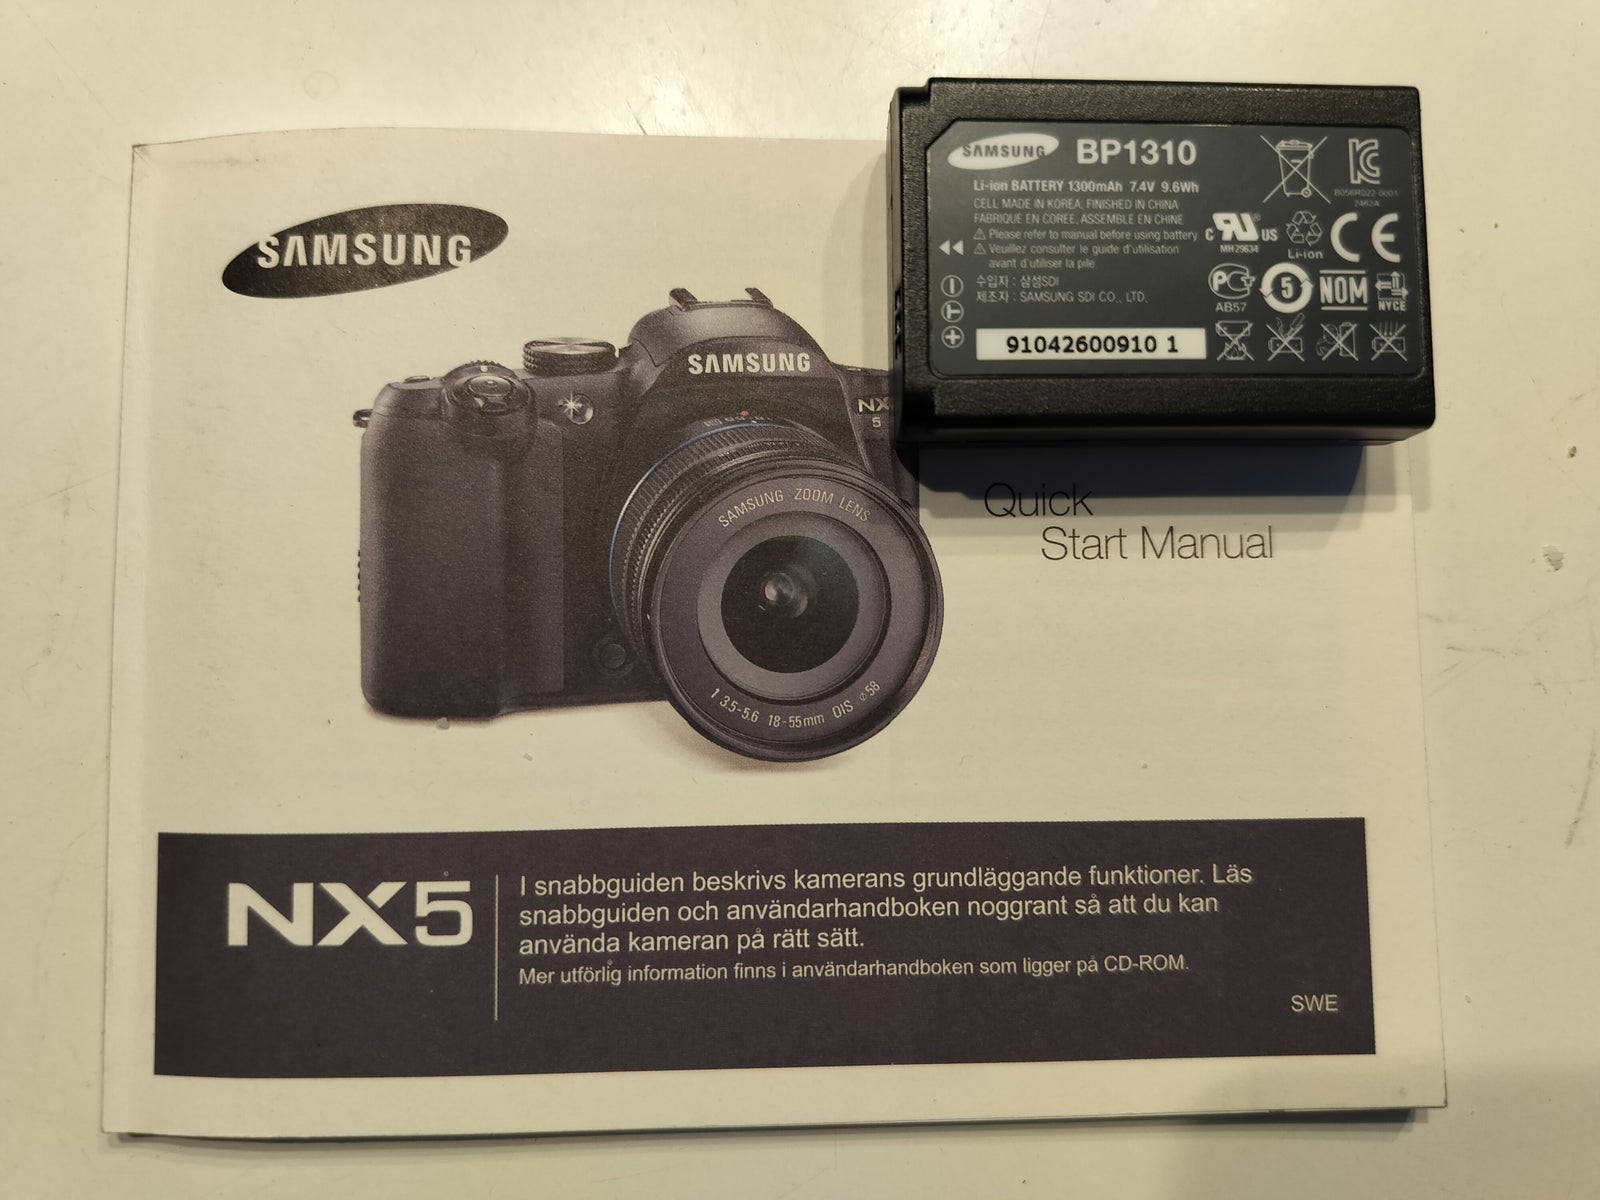 Samsung, NX5, 14.1 megapixels